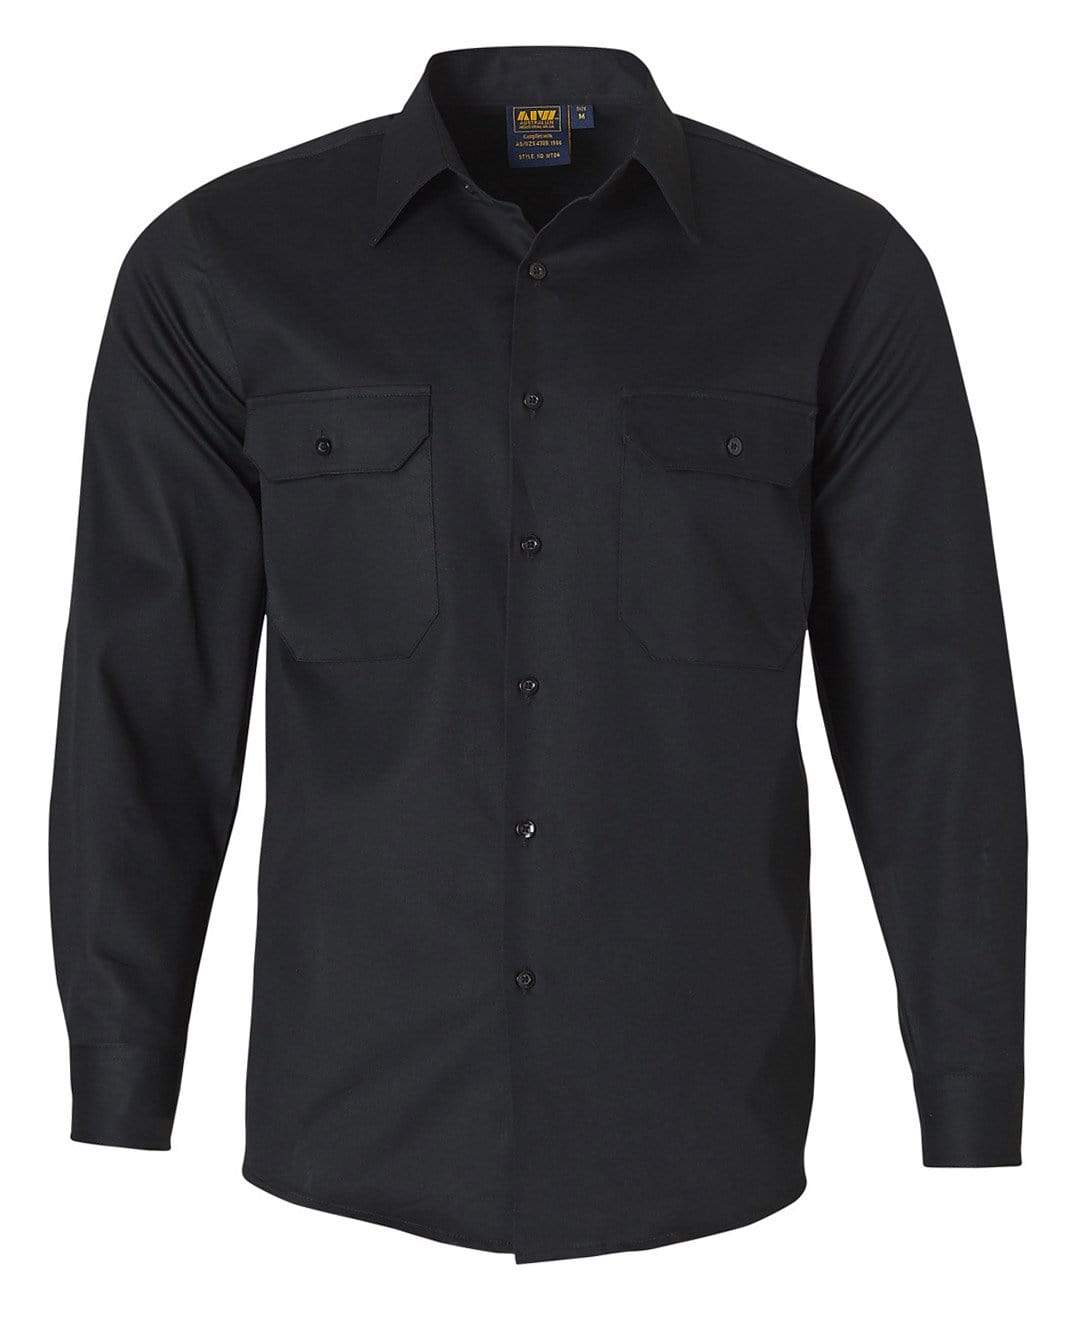 Cotton Drill Work Shirt WT04 Work Wear Australian Industrial Wear S Black 